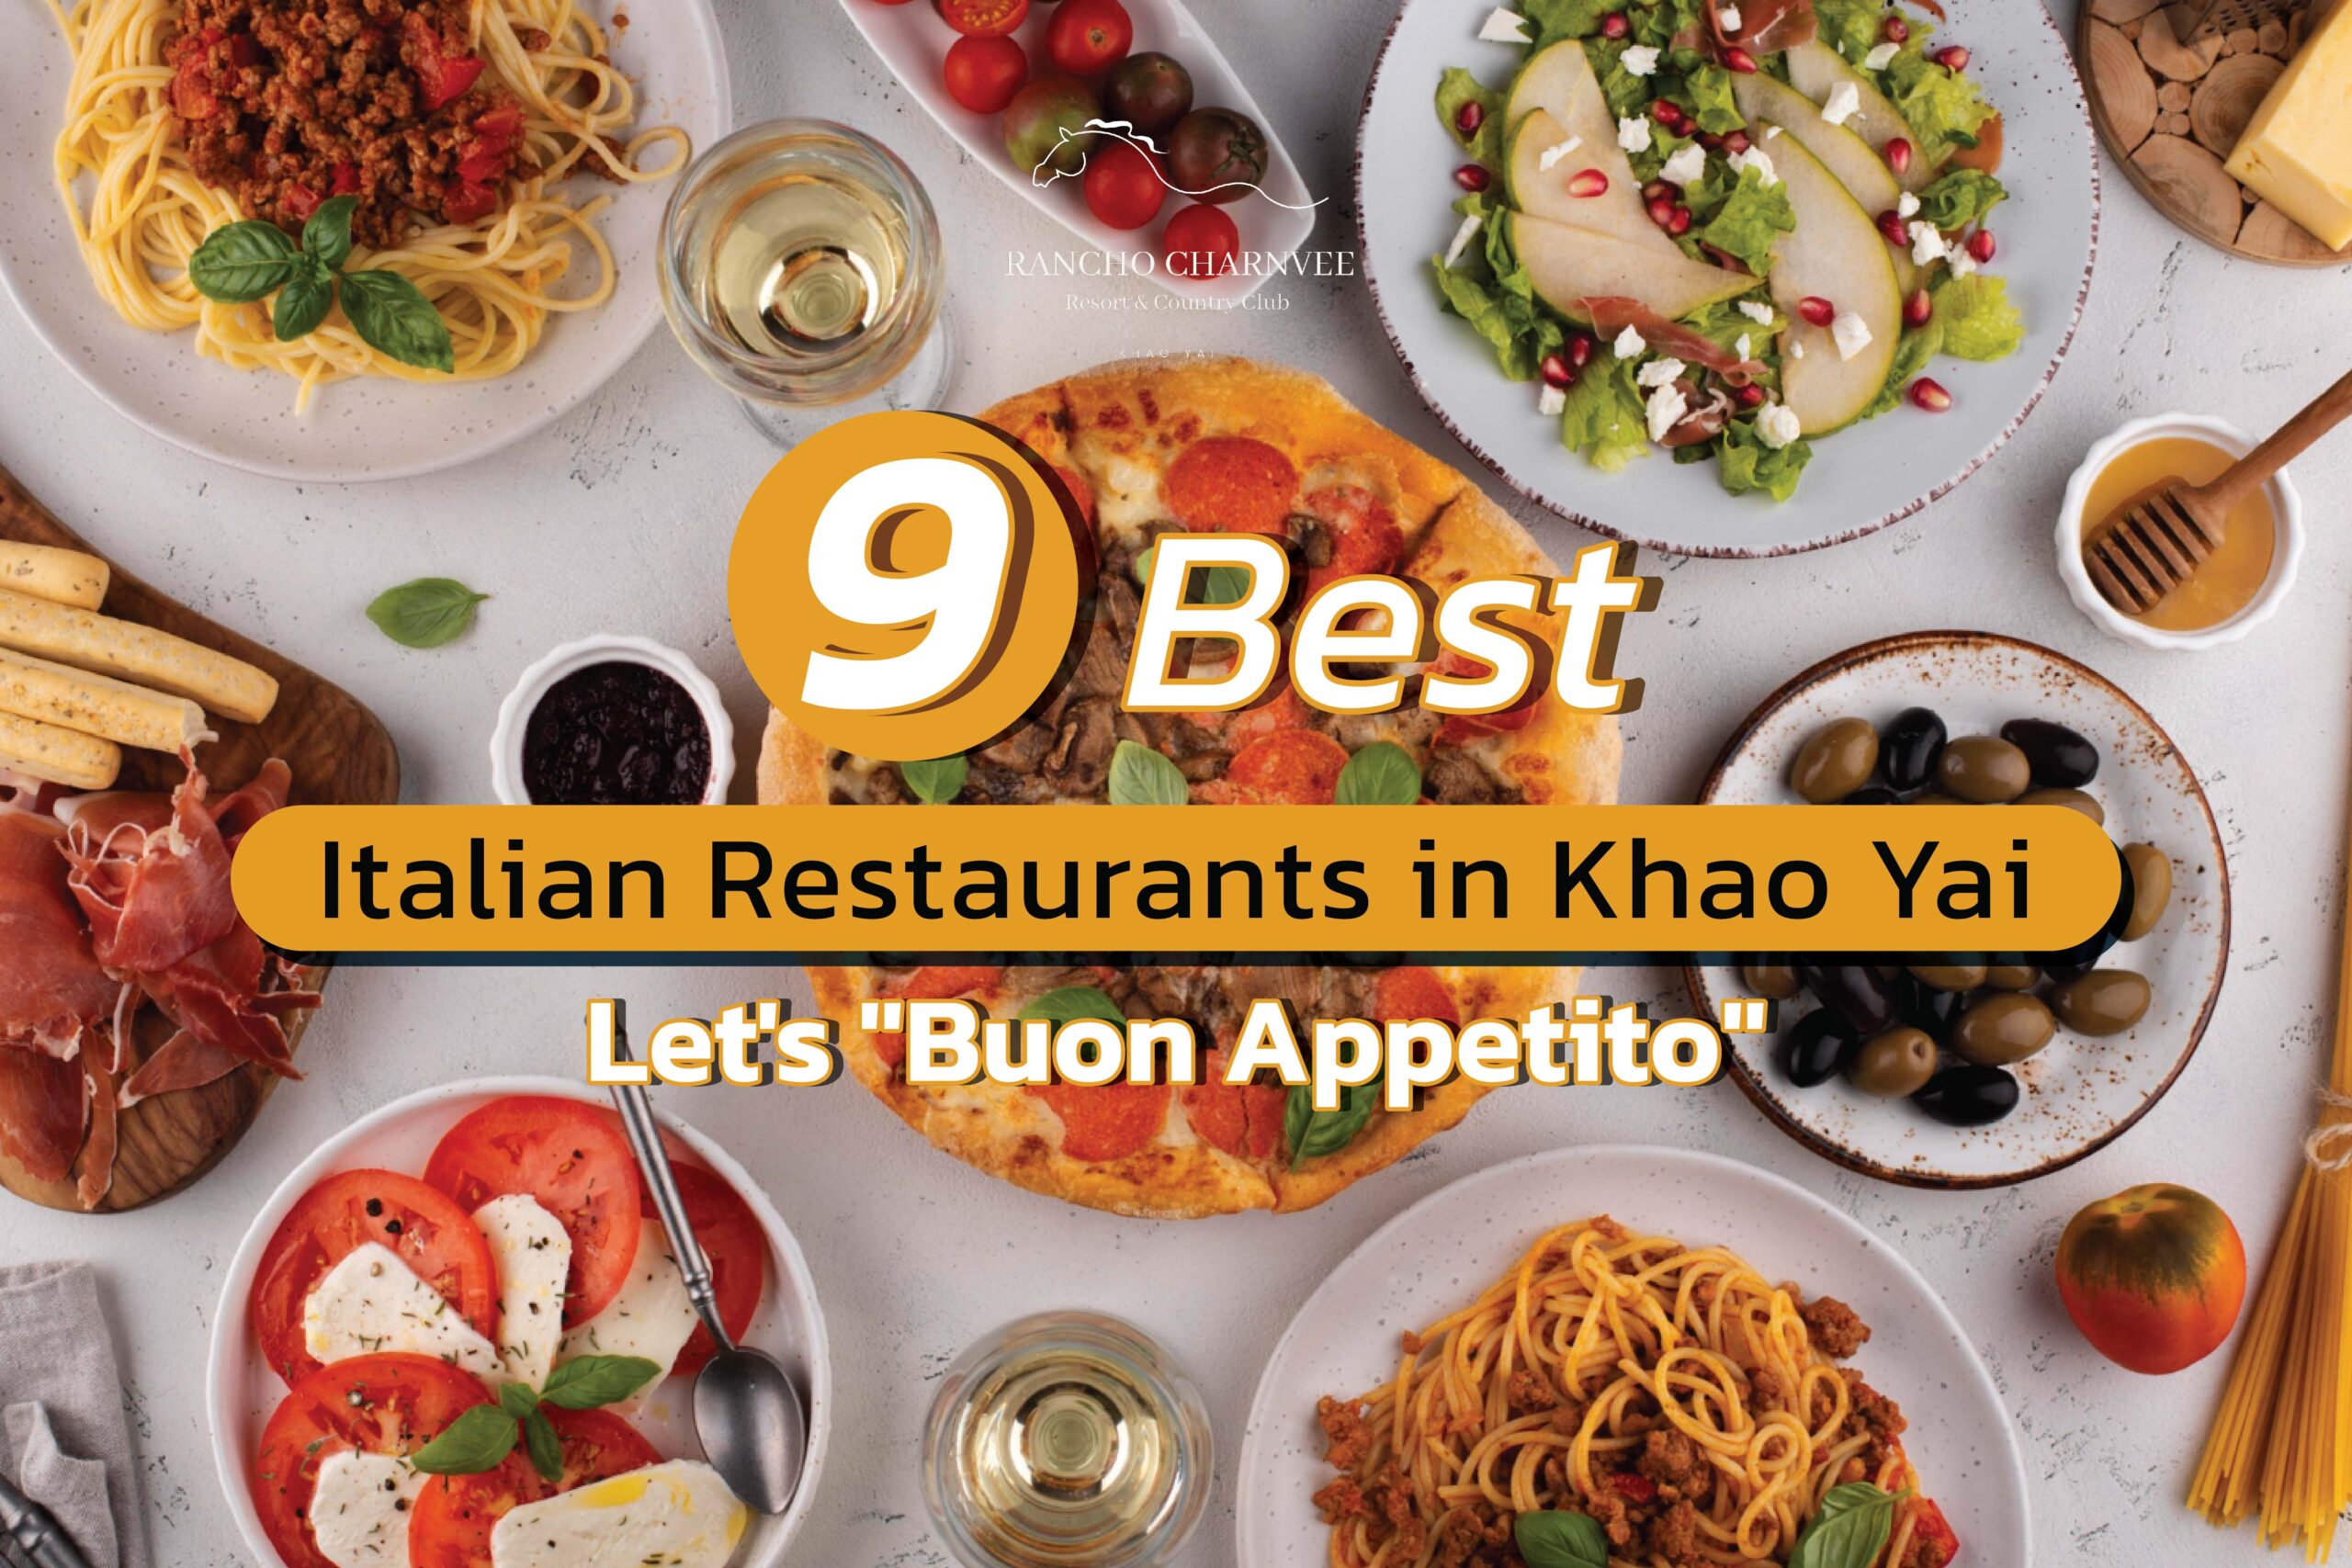 9 Best Italian Restaurants in Khao Yai: Let's "Buon Appetito"